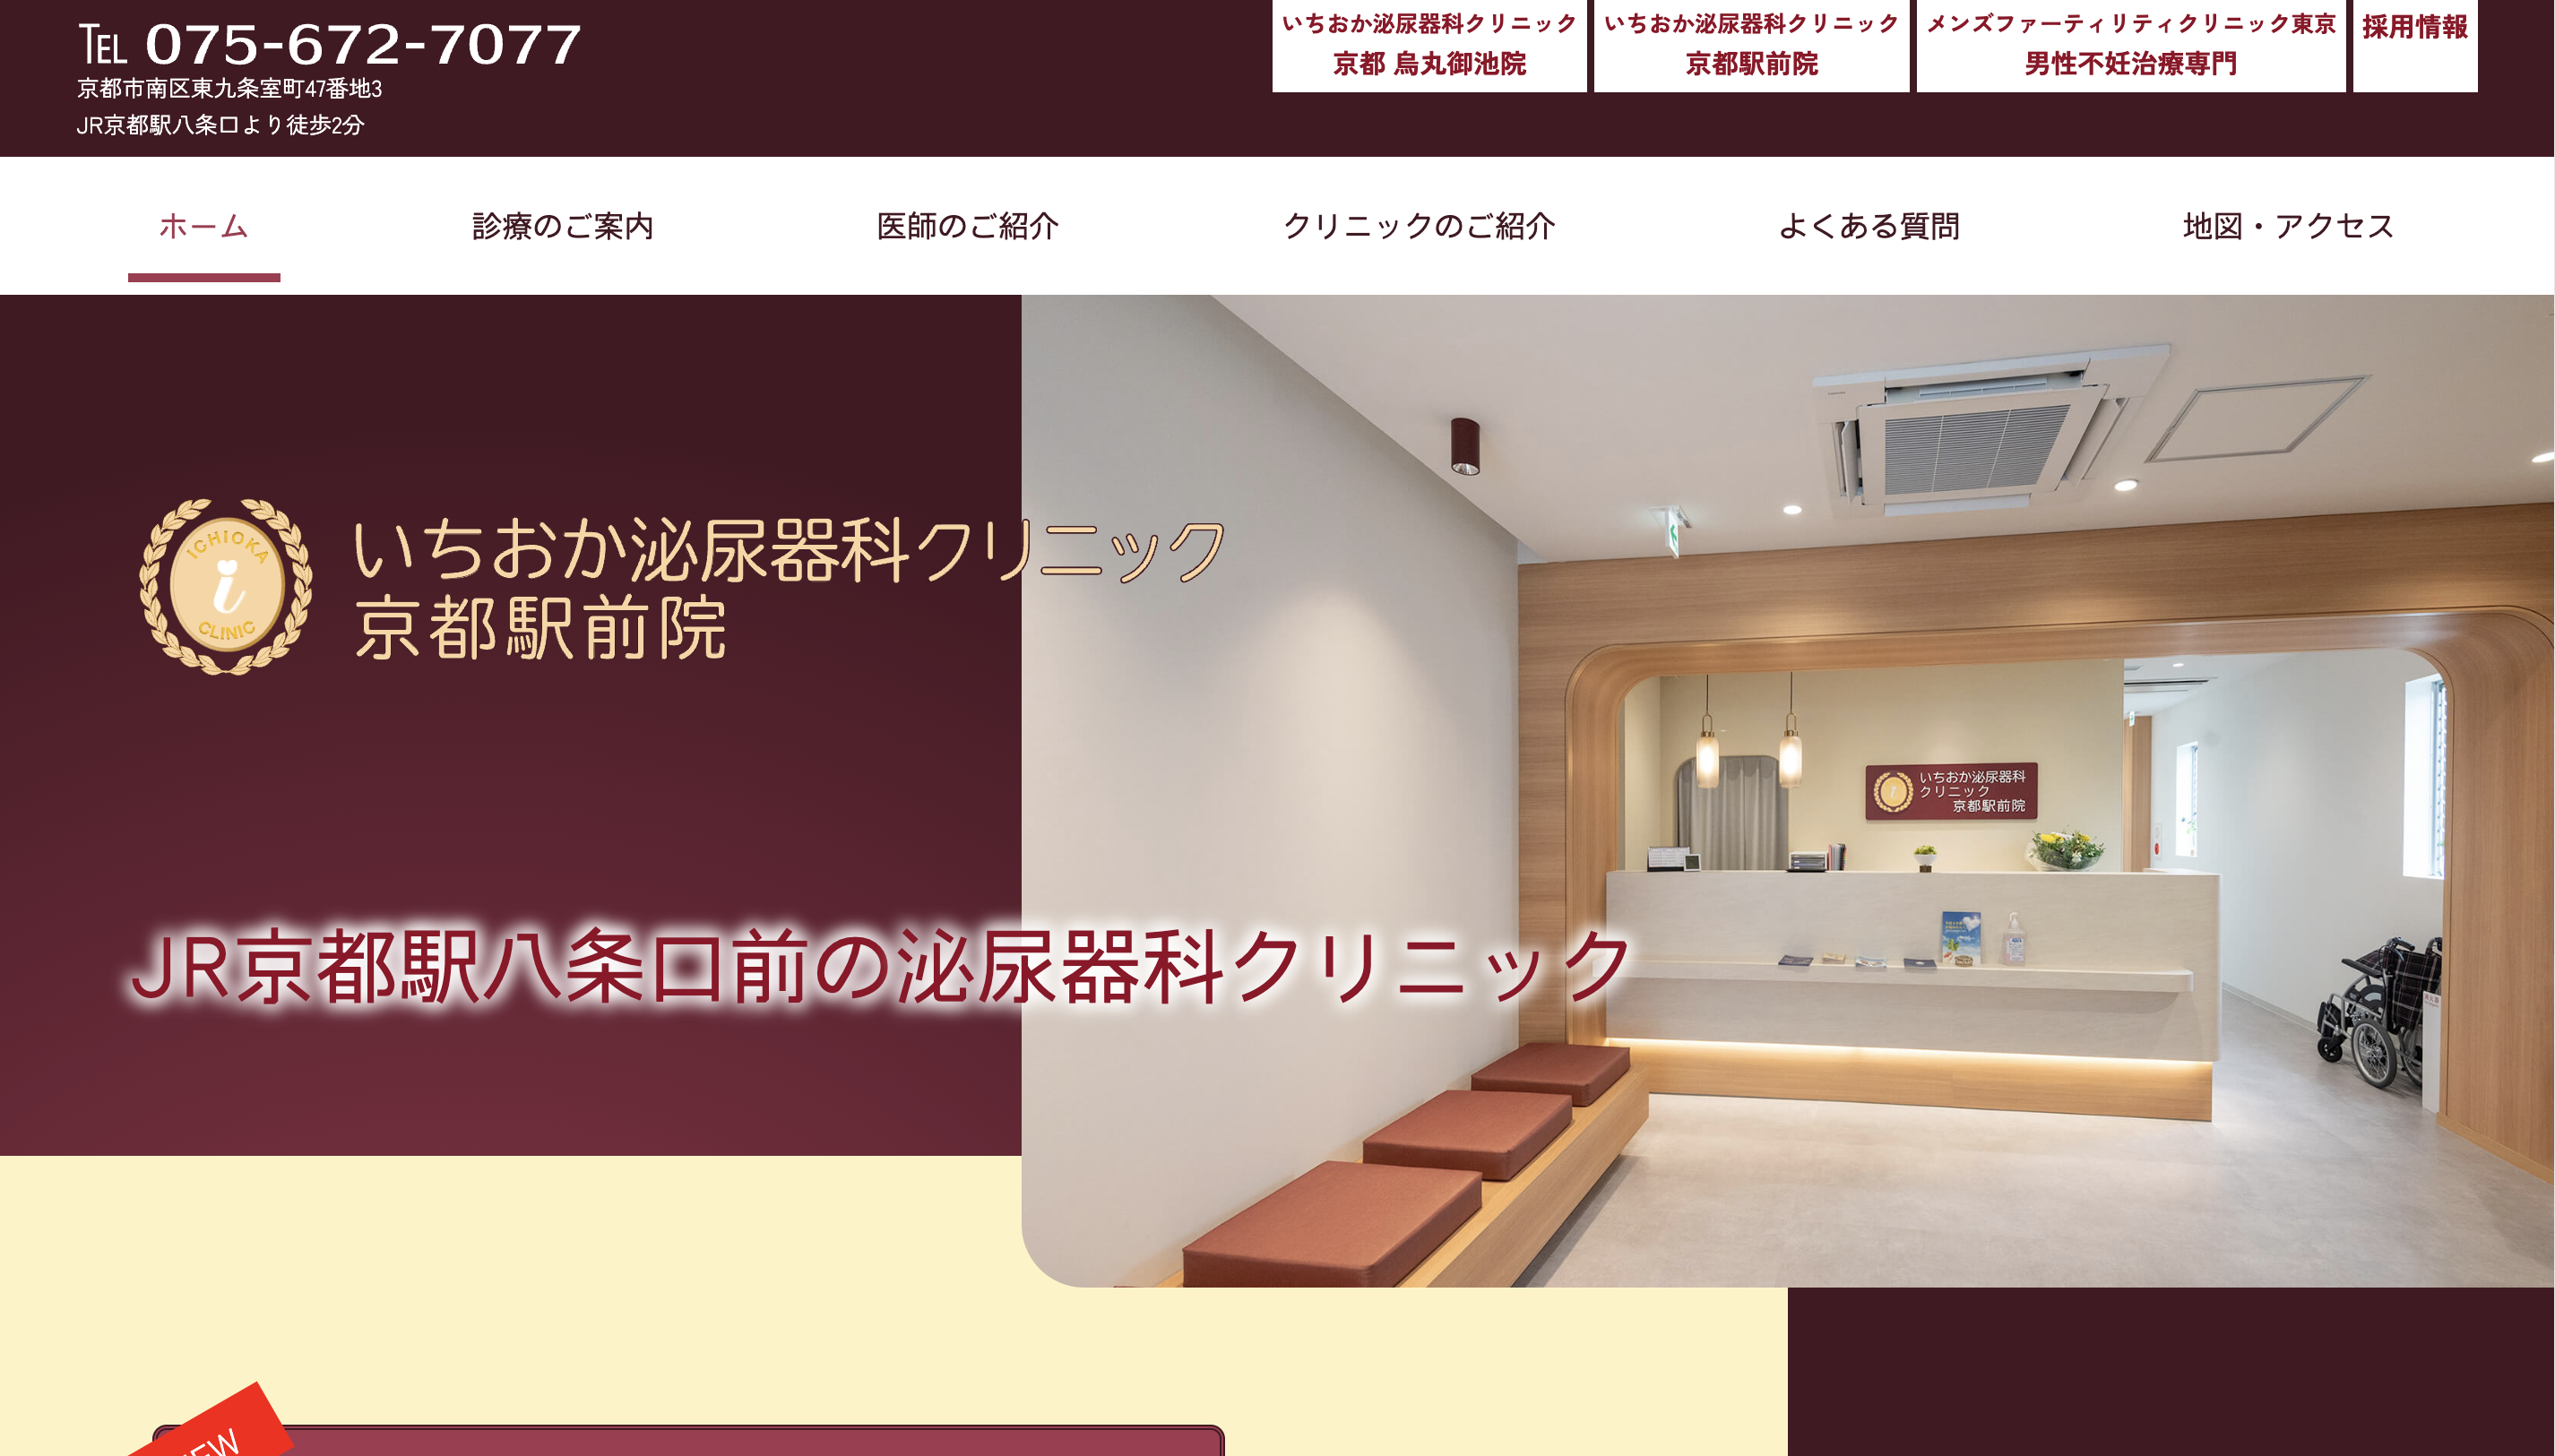 いちおか泌尿器科クリニック 京都駅前院の紹介画像